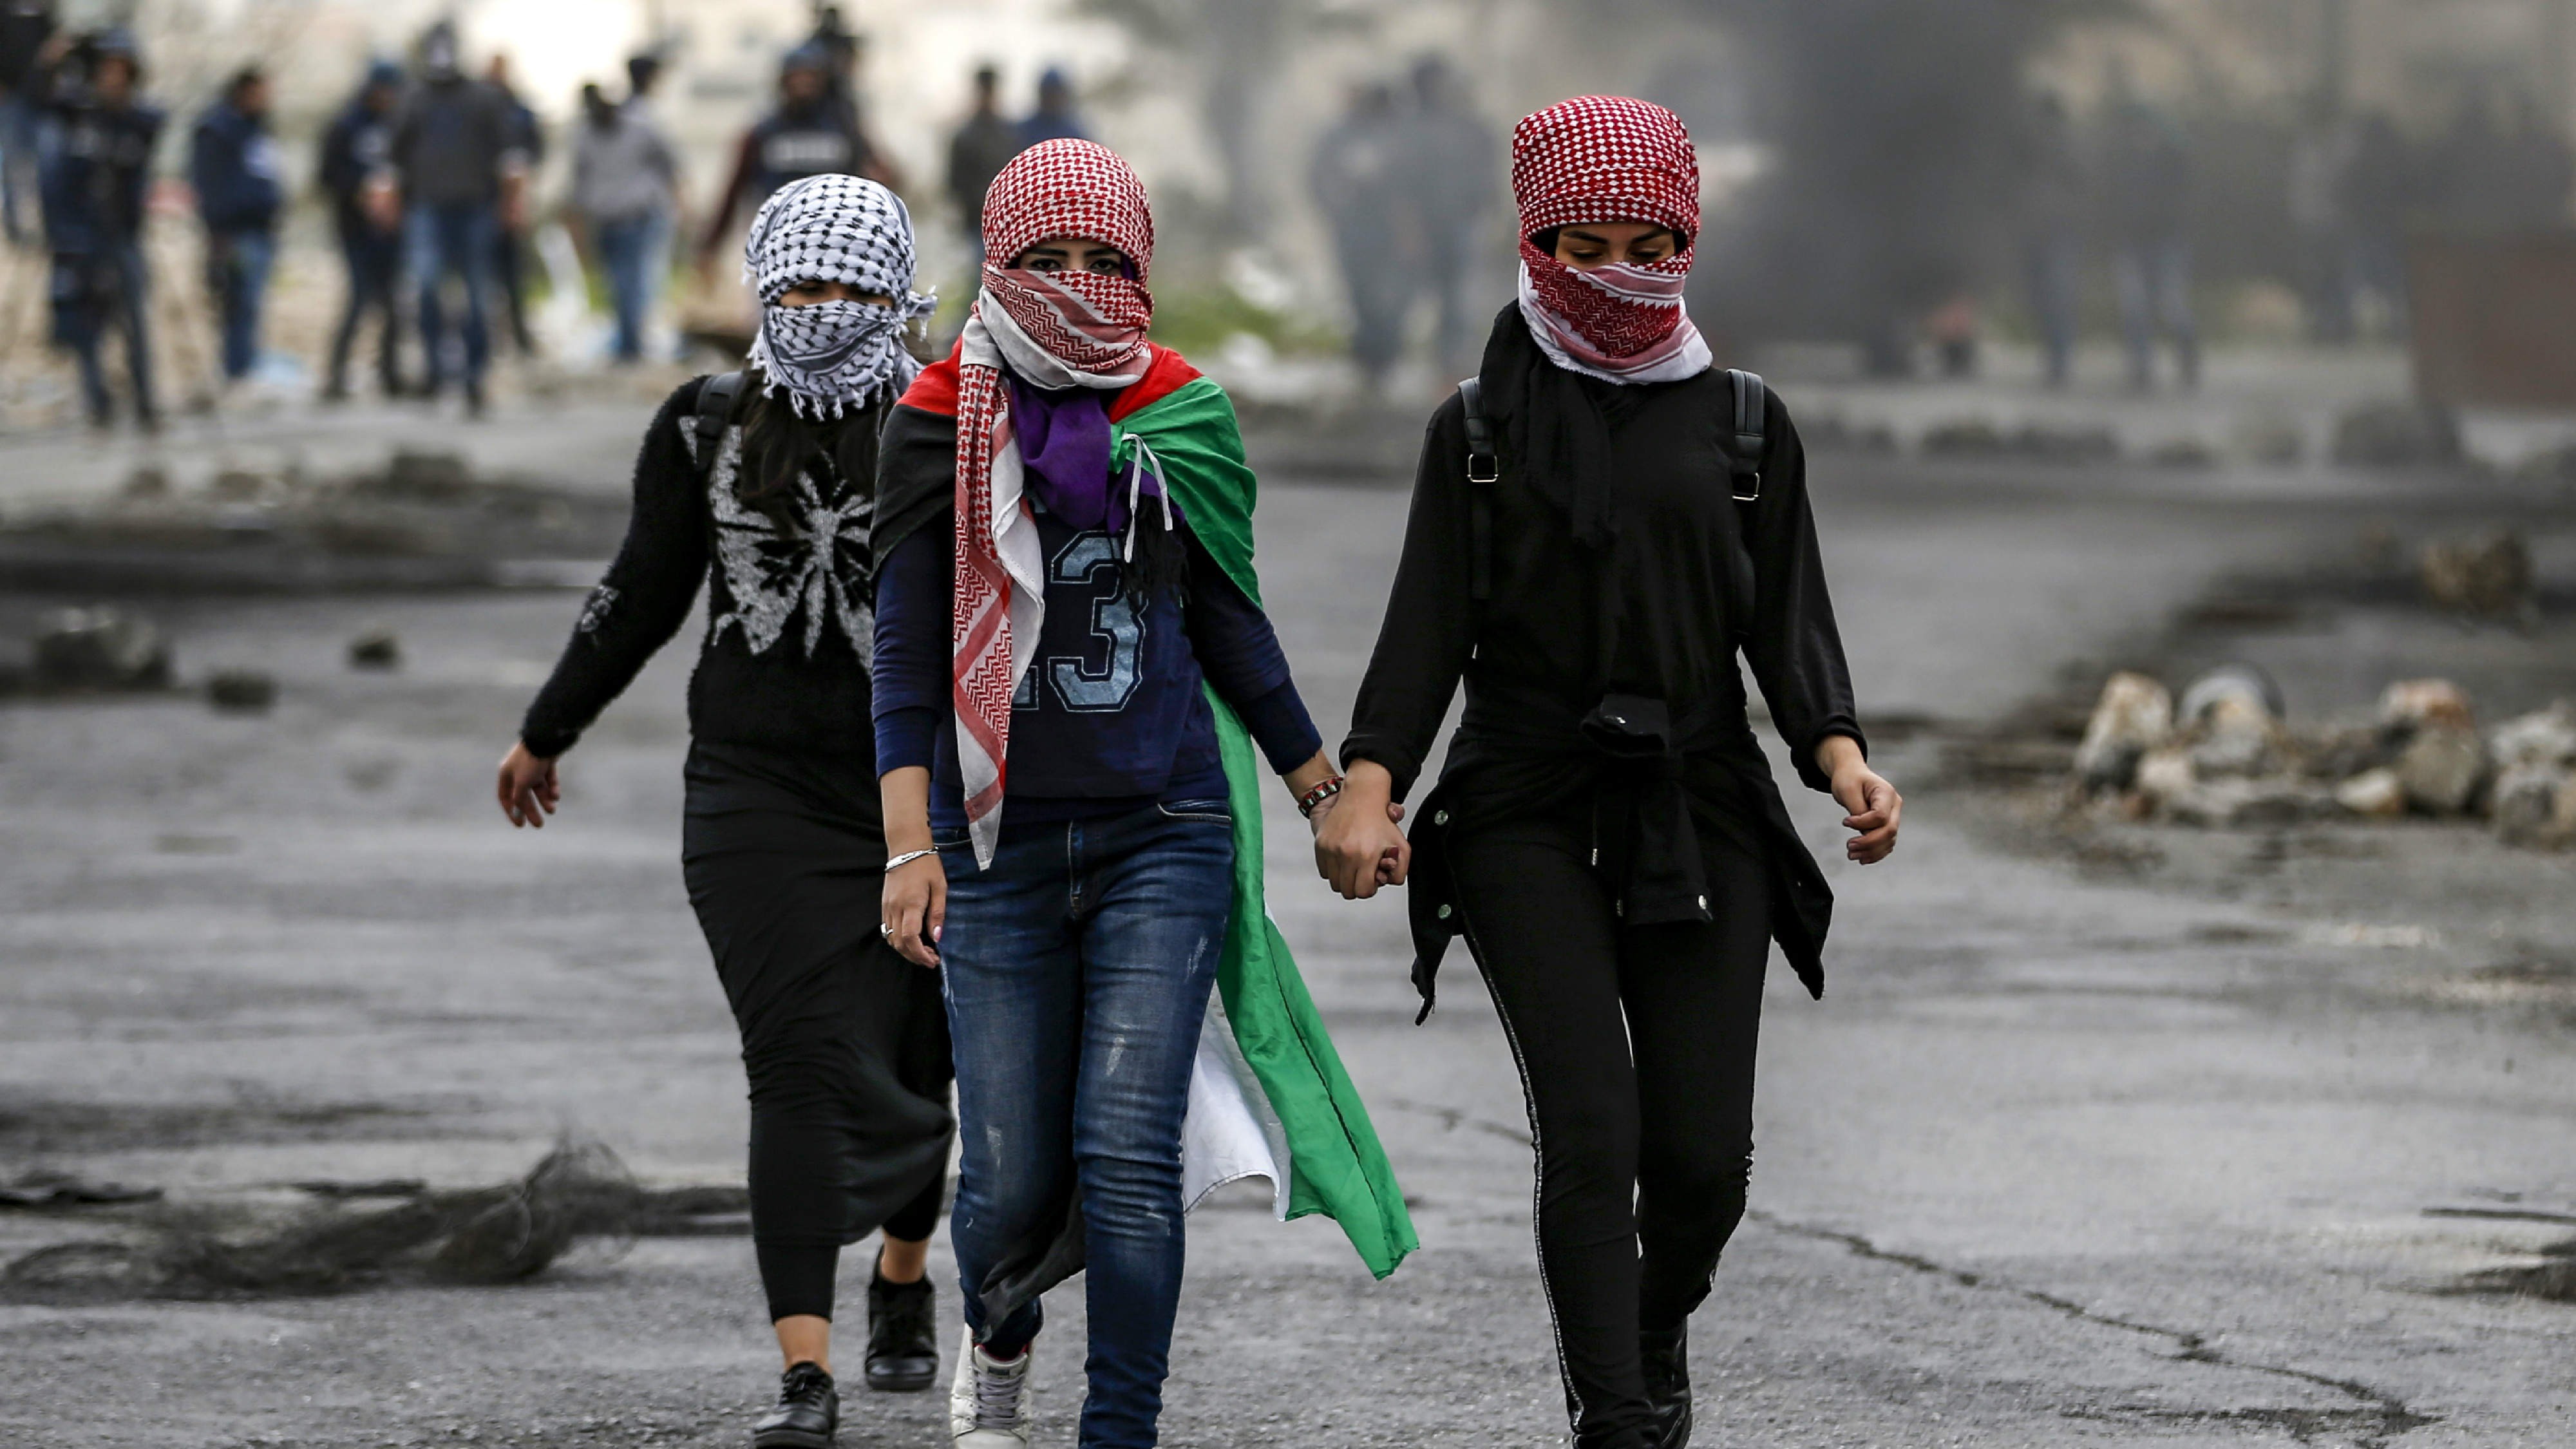 فتيات فلسطينيات وجوههن مغطاة بالكوفيات التقليدية ذات المربعات يسيرن خلال اشتباكات مع القوات الإسرائيلية في أعقاب مظاهرة بمناسبة يوم الأرض في الضفة الغربية